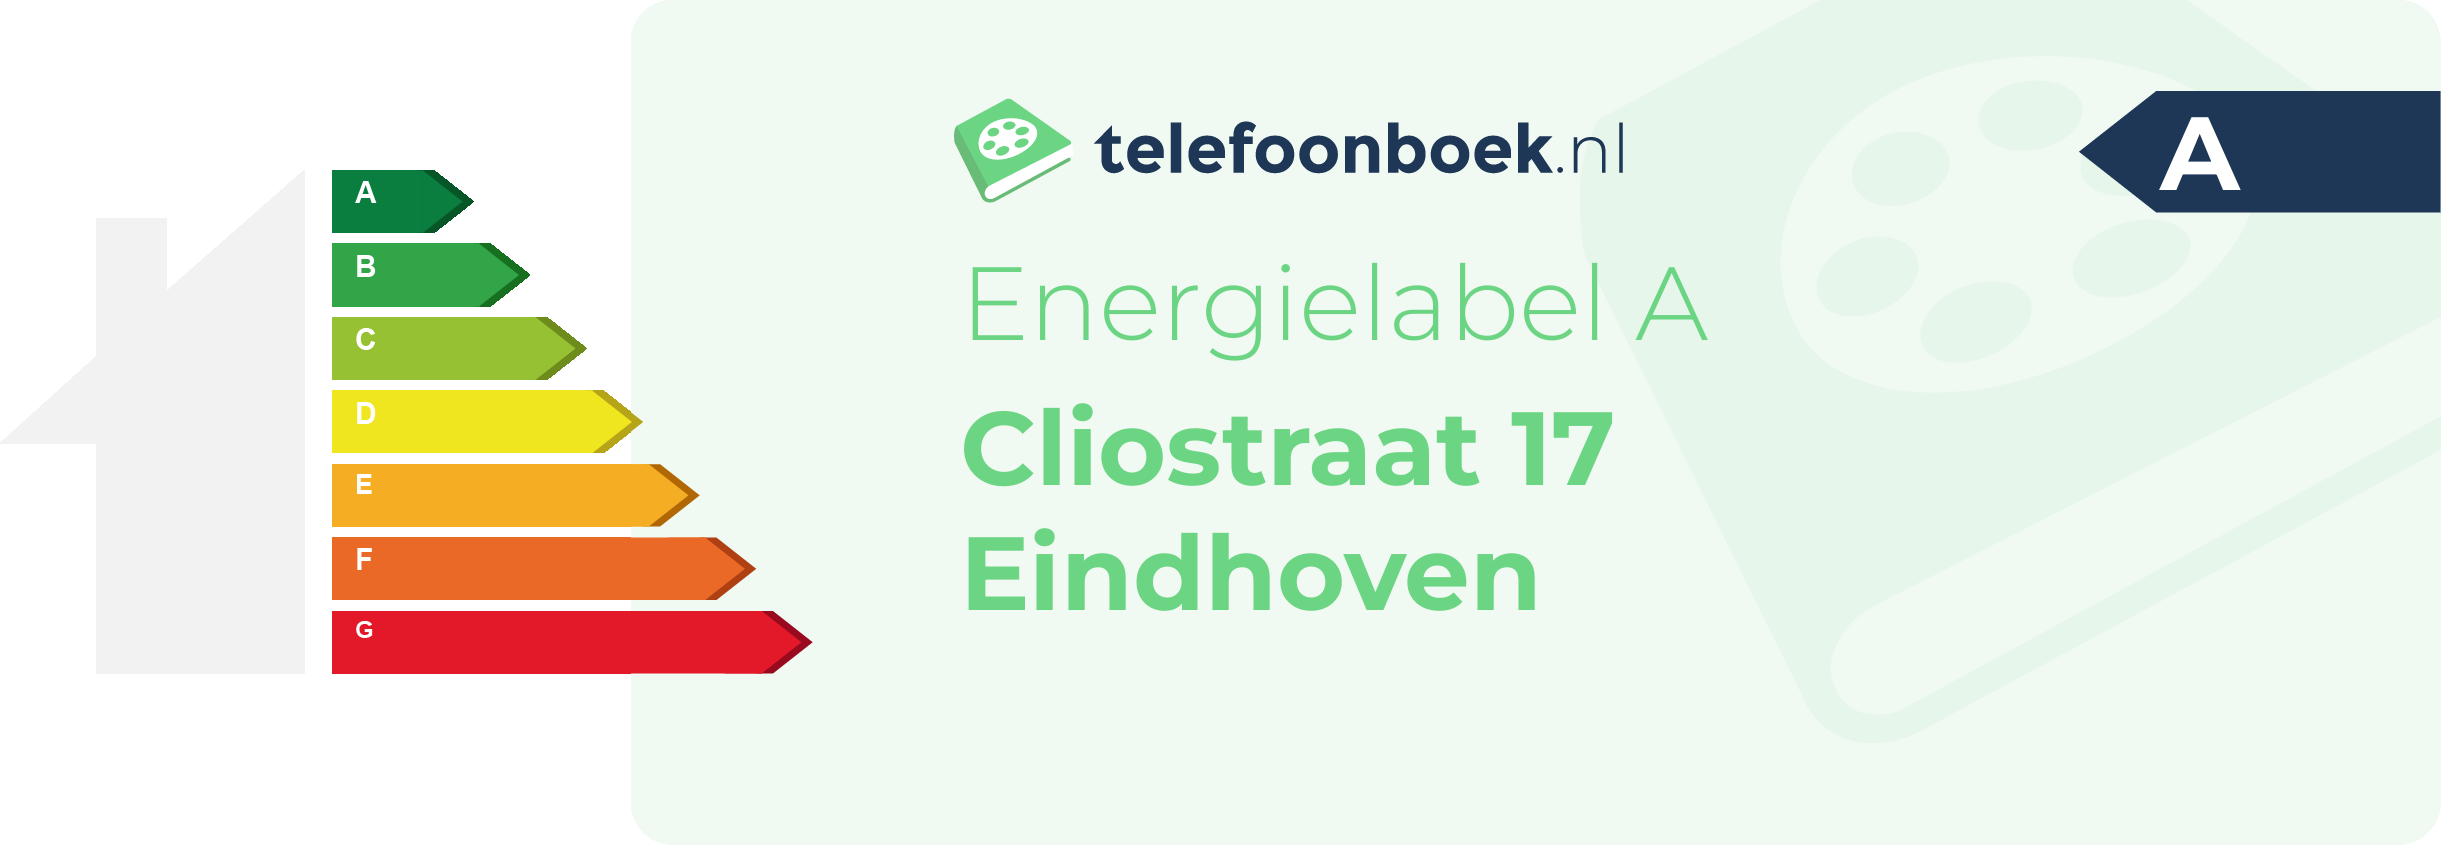 Energielabel Cliostraat 17 Eindhoven